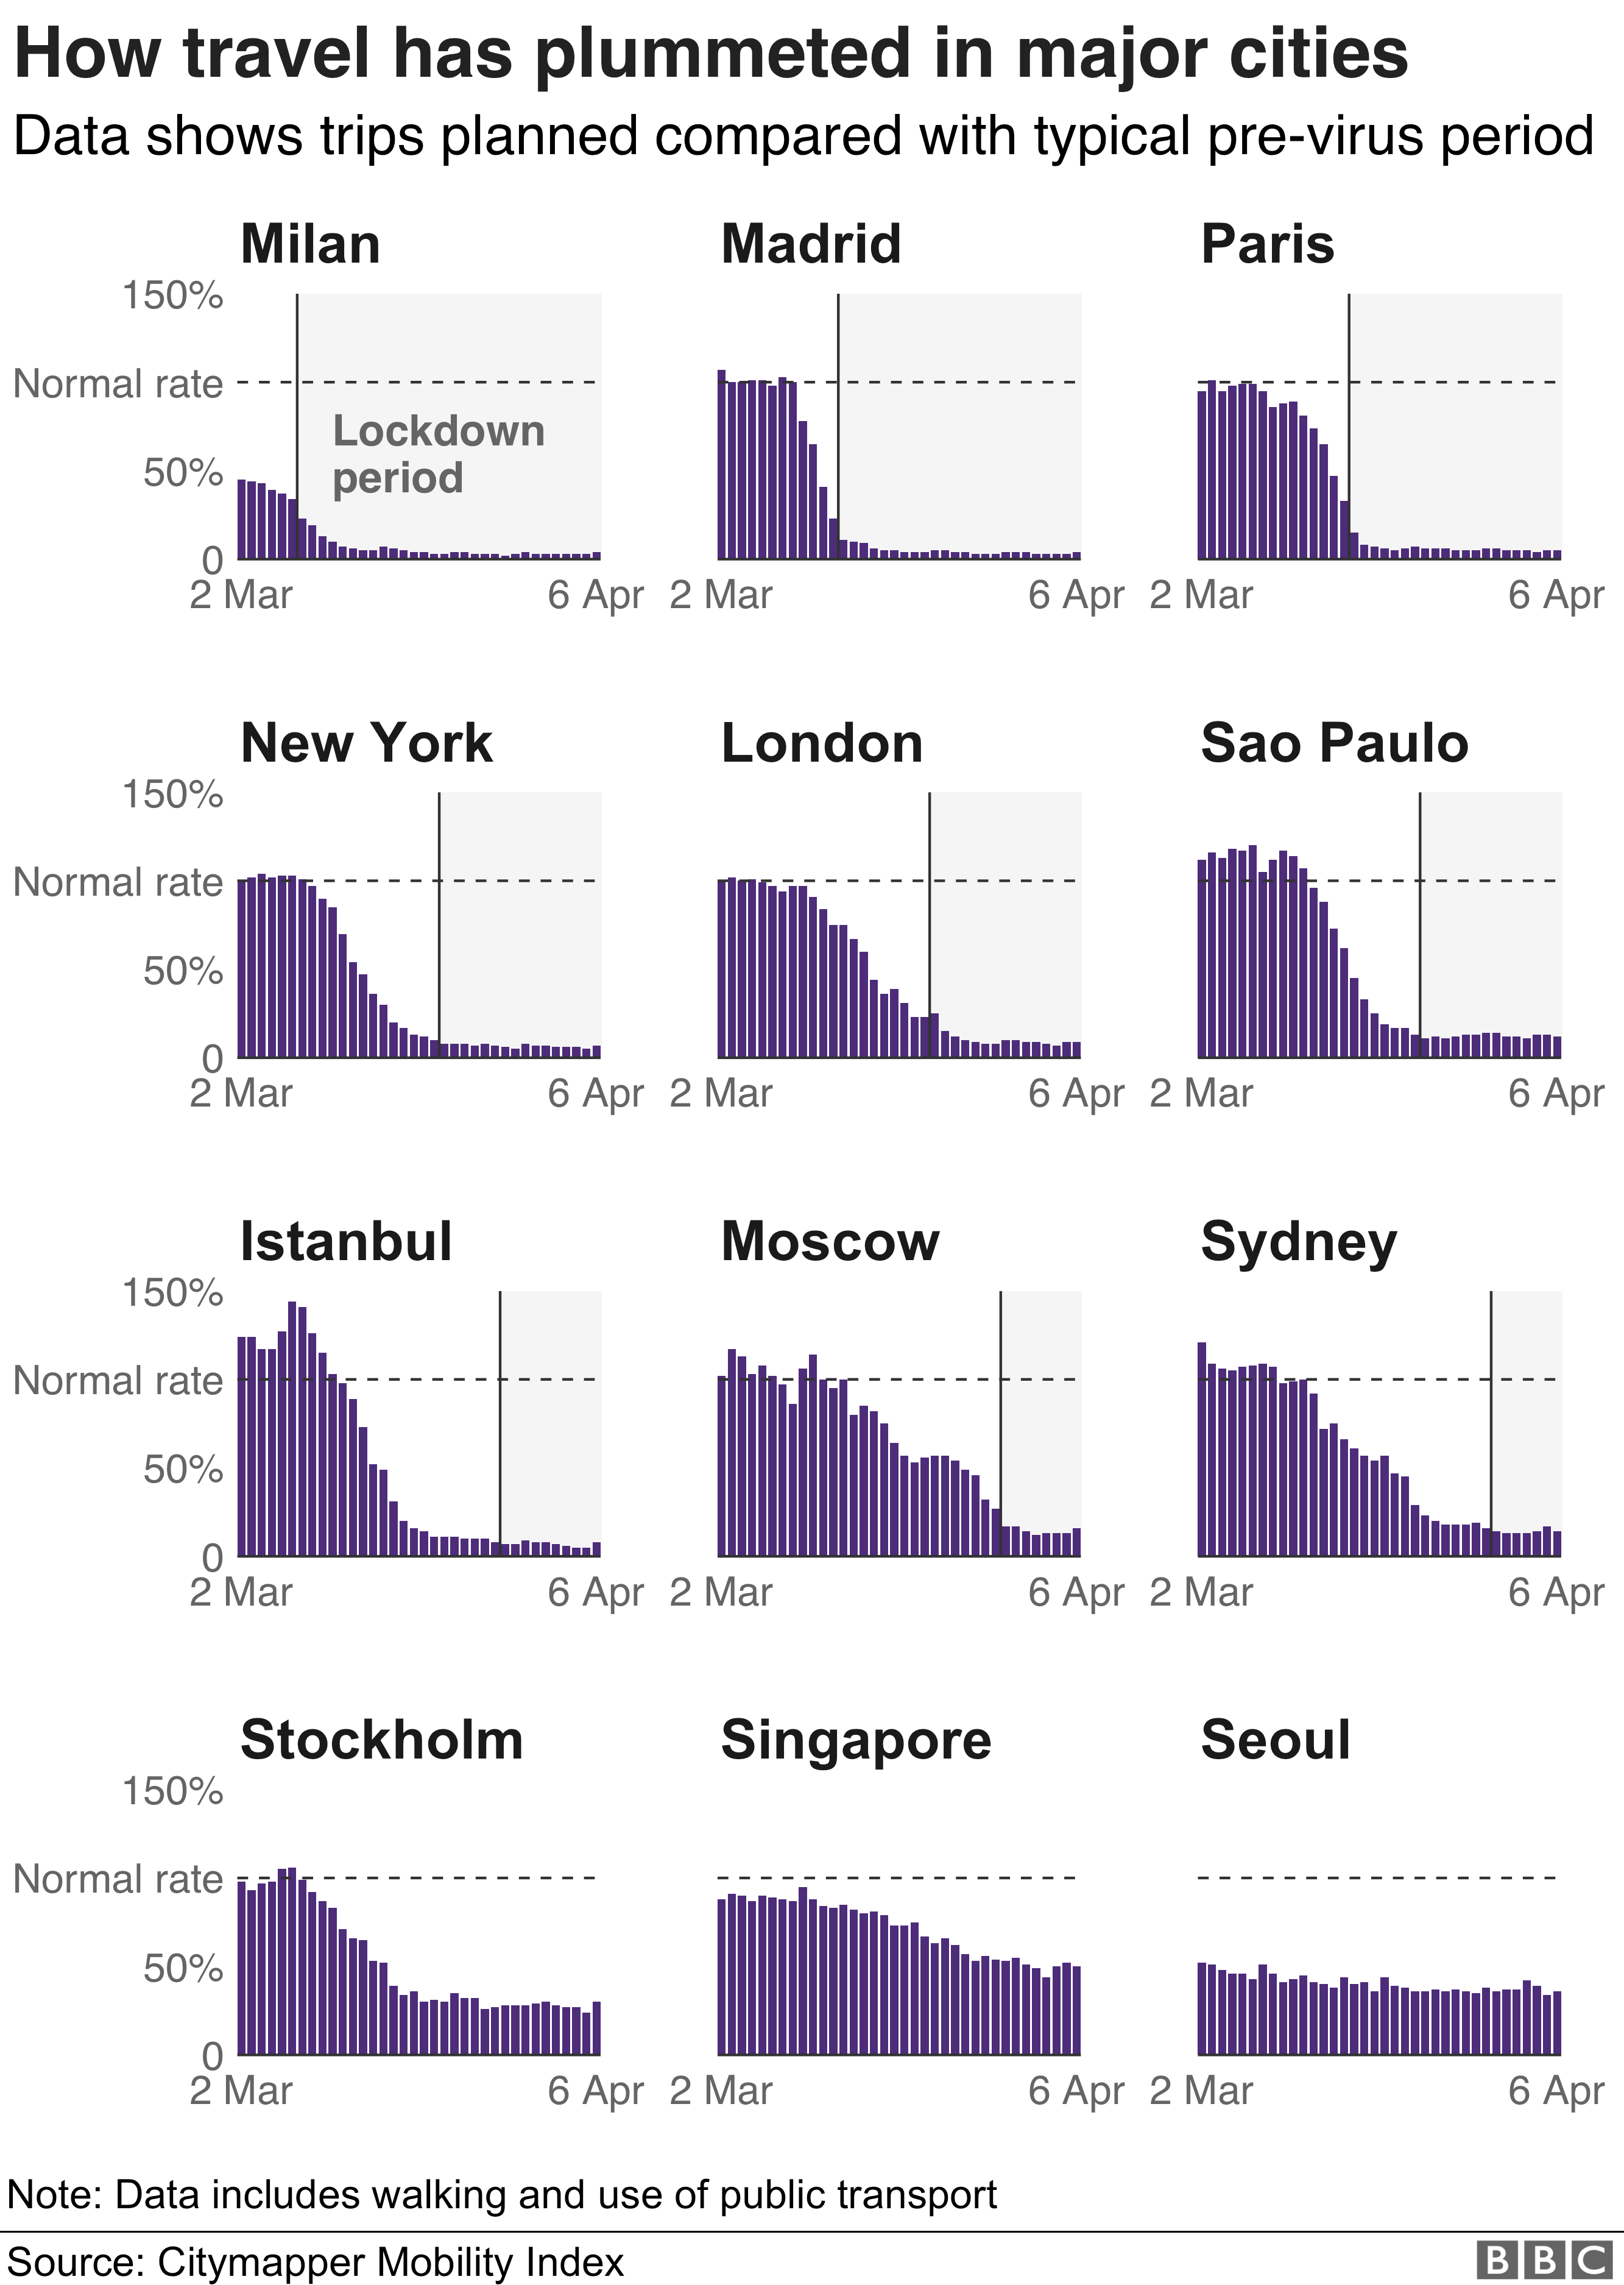 該圖表顯示了自3月初以來全球主要城市的出行如何直線下降